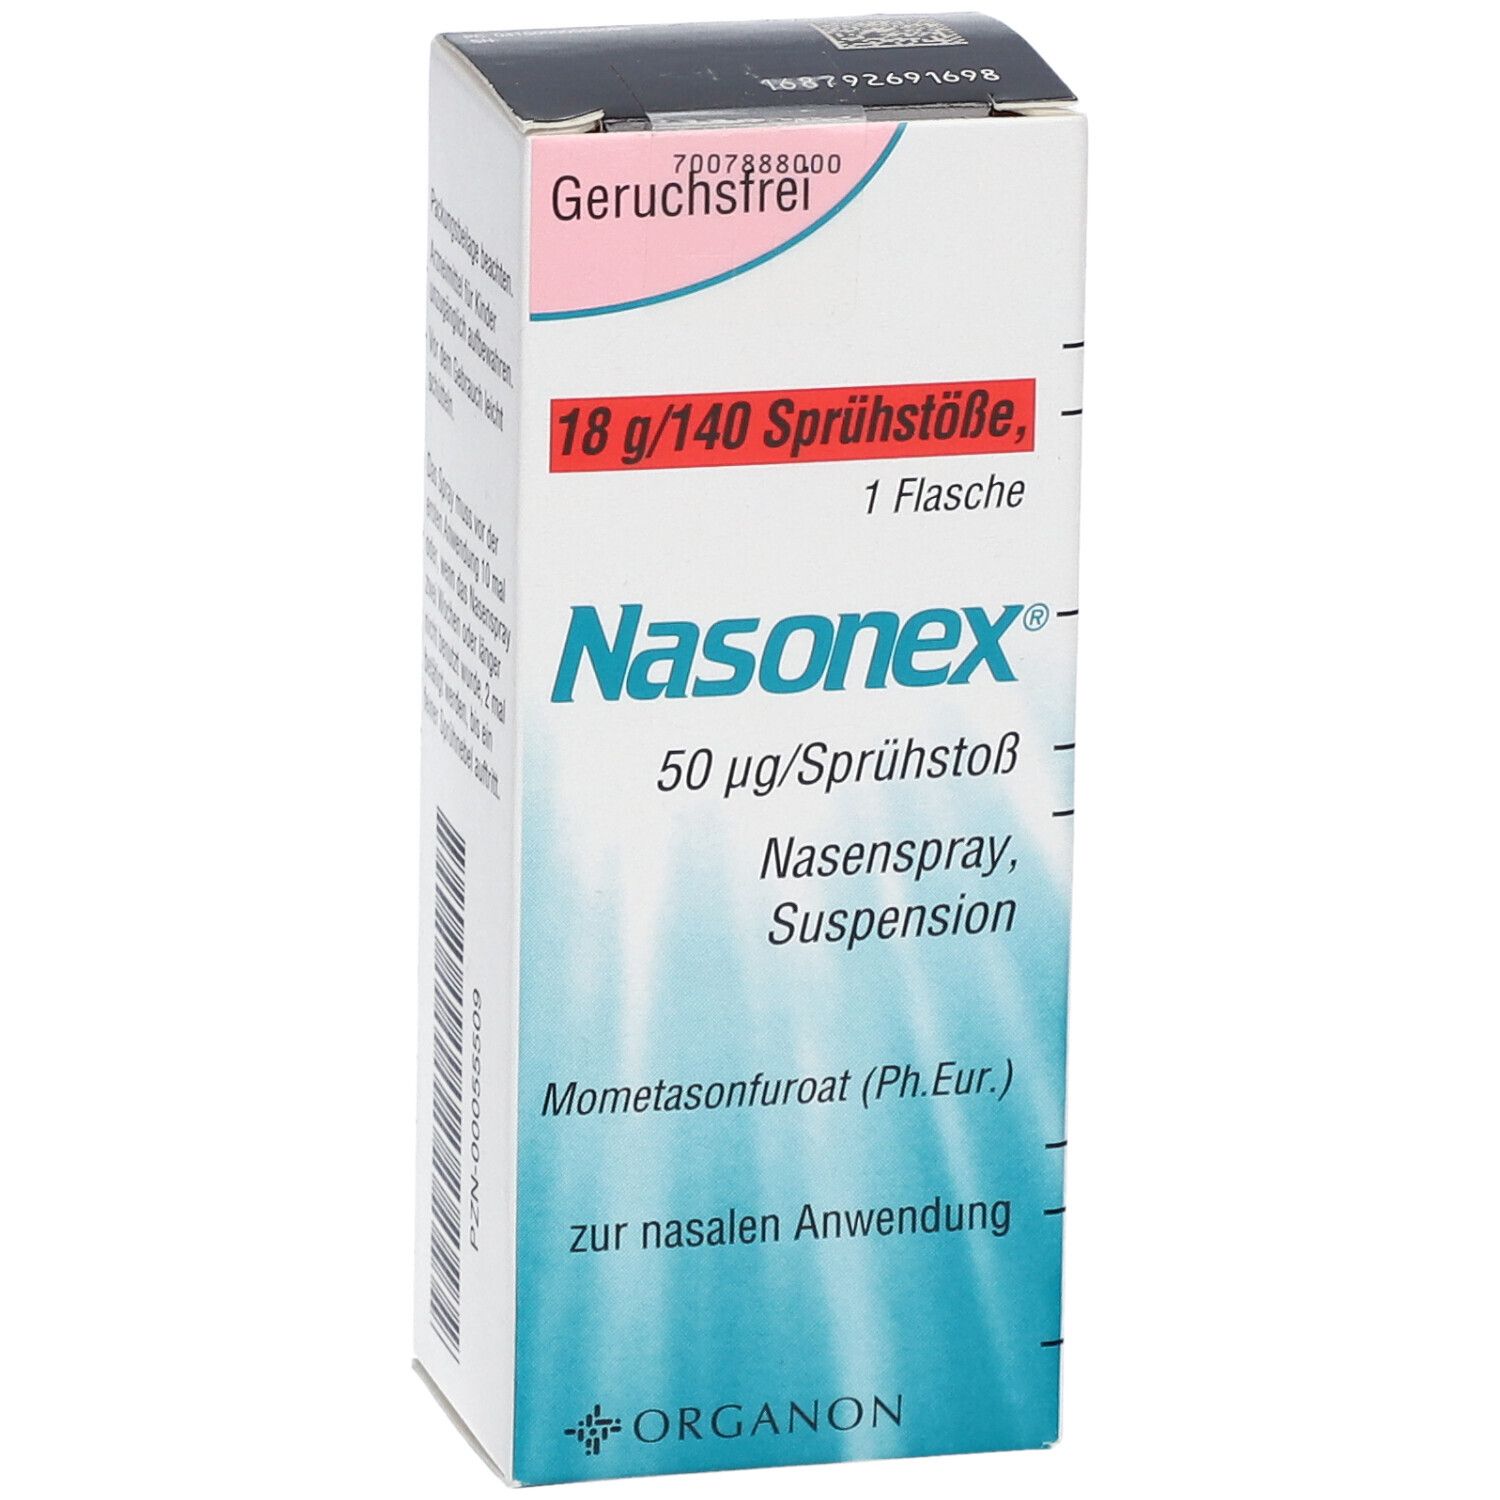 Назонекс действующее вещество аналоги. Назонекс альтернатива. Nasonex Египет. Назонекс фирмы Organon. Назонекс спрей для носа ребенка 4 года.